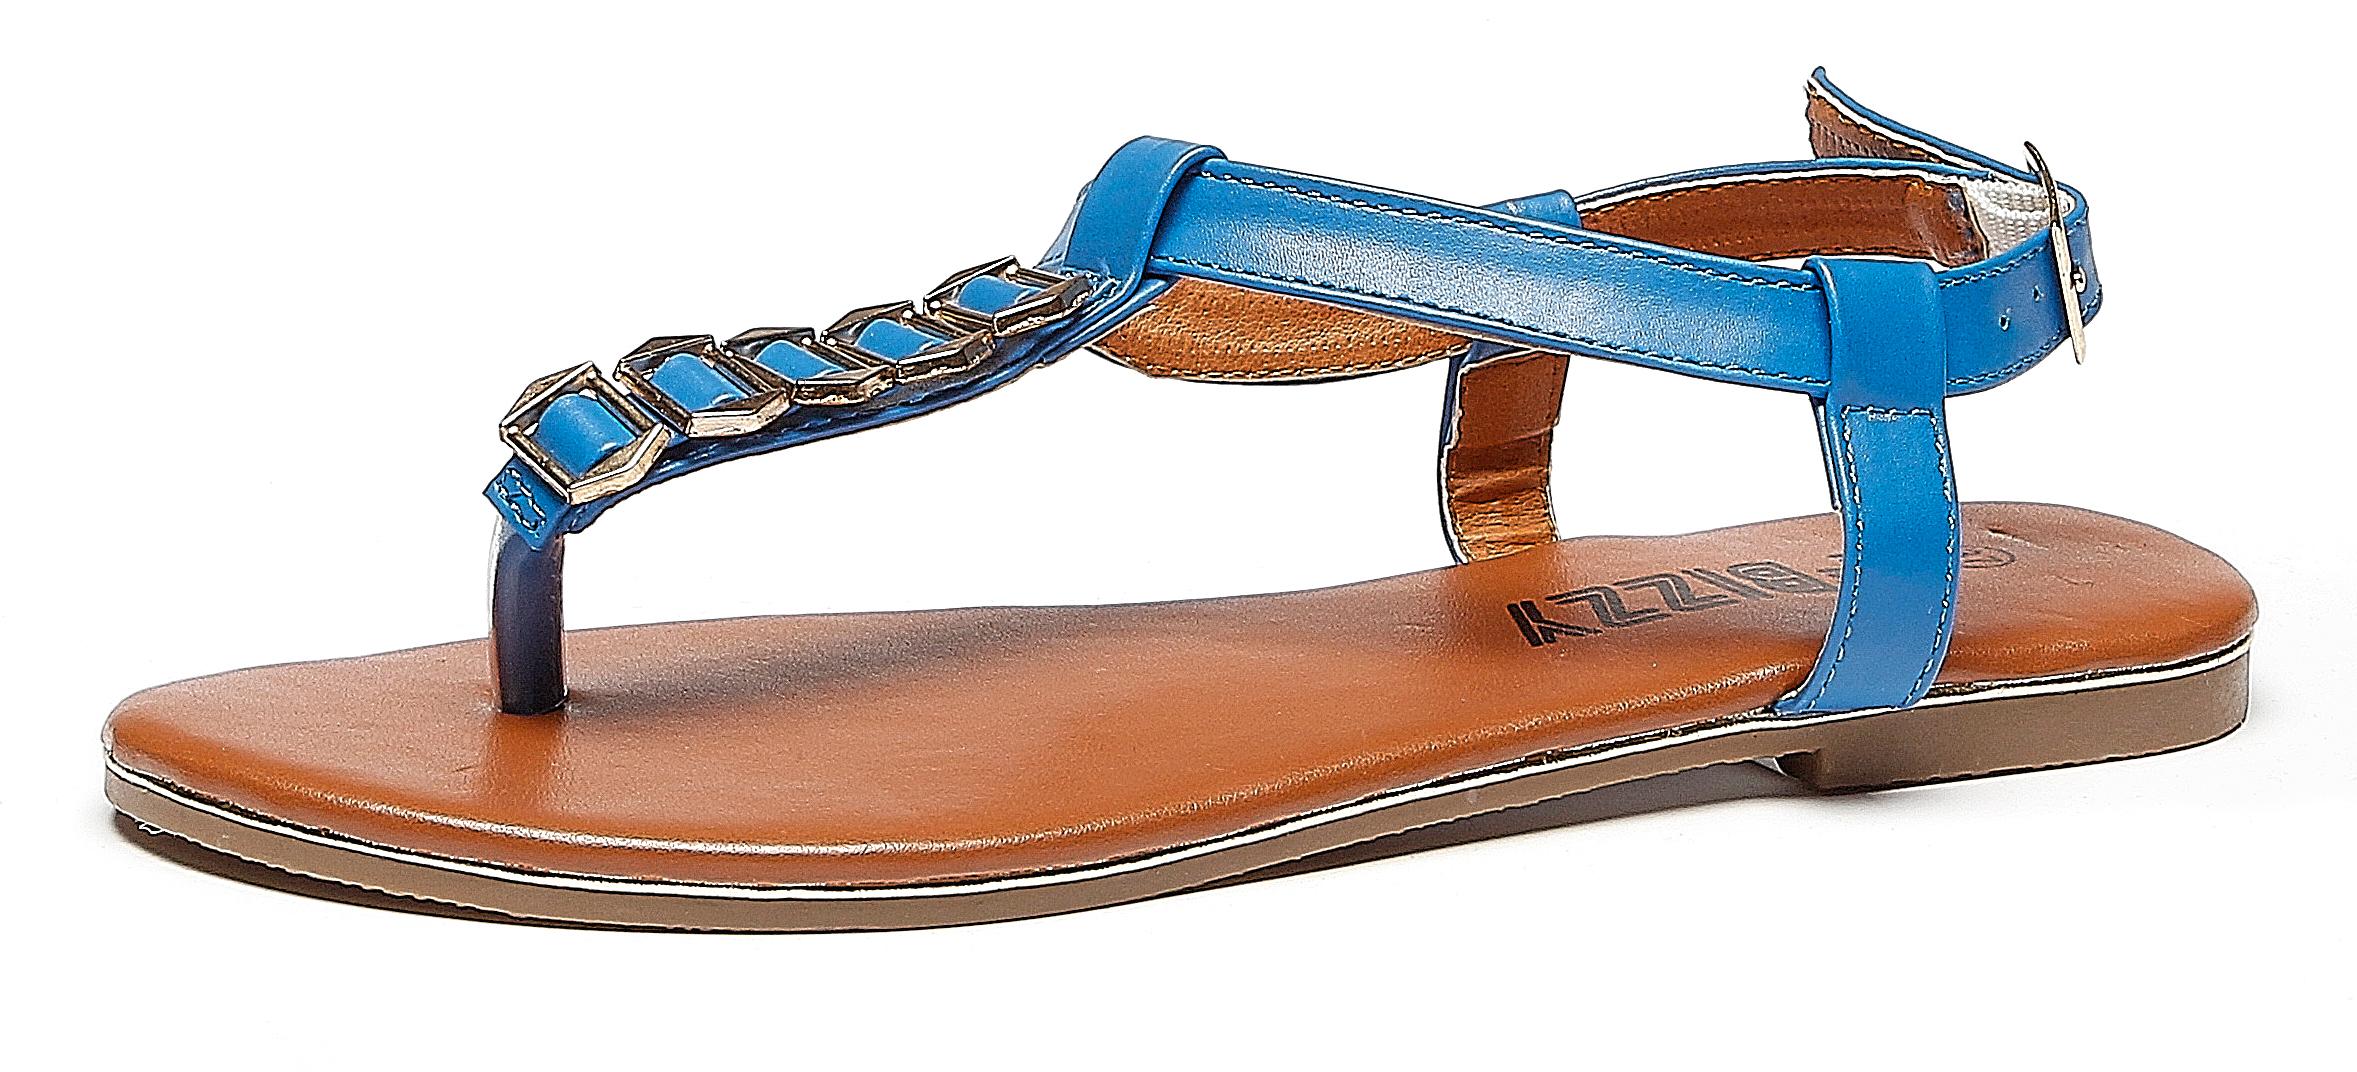 Sandales bleues - Shoe Discount - 17,99€